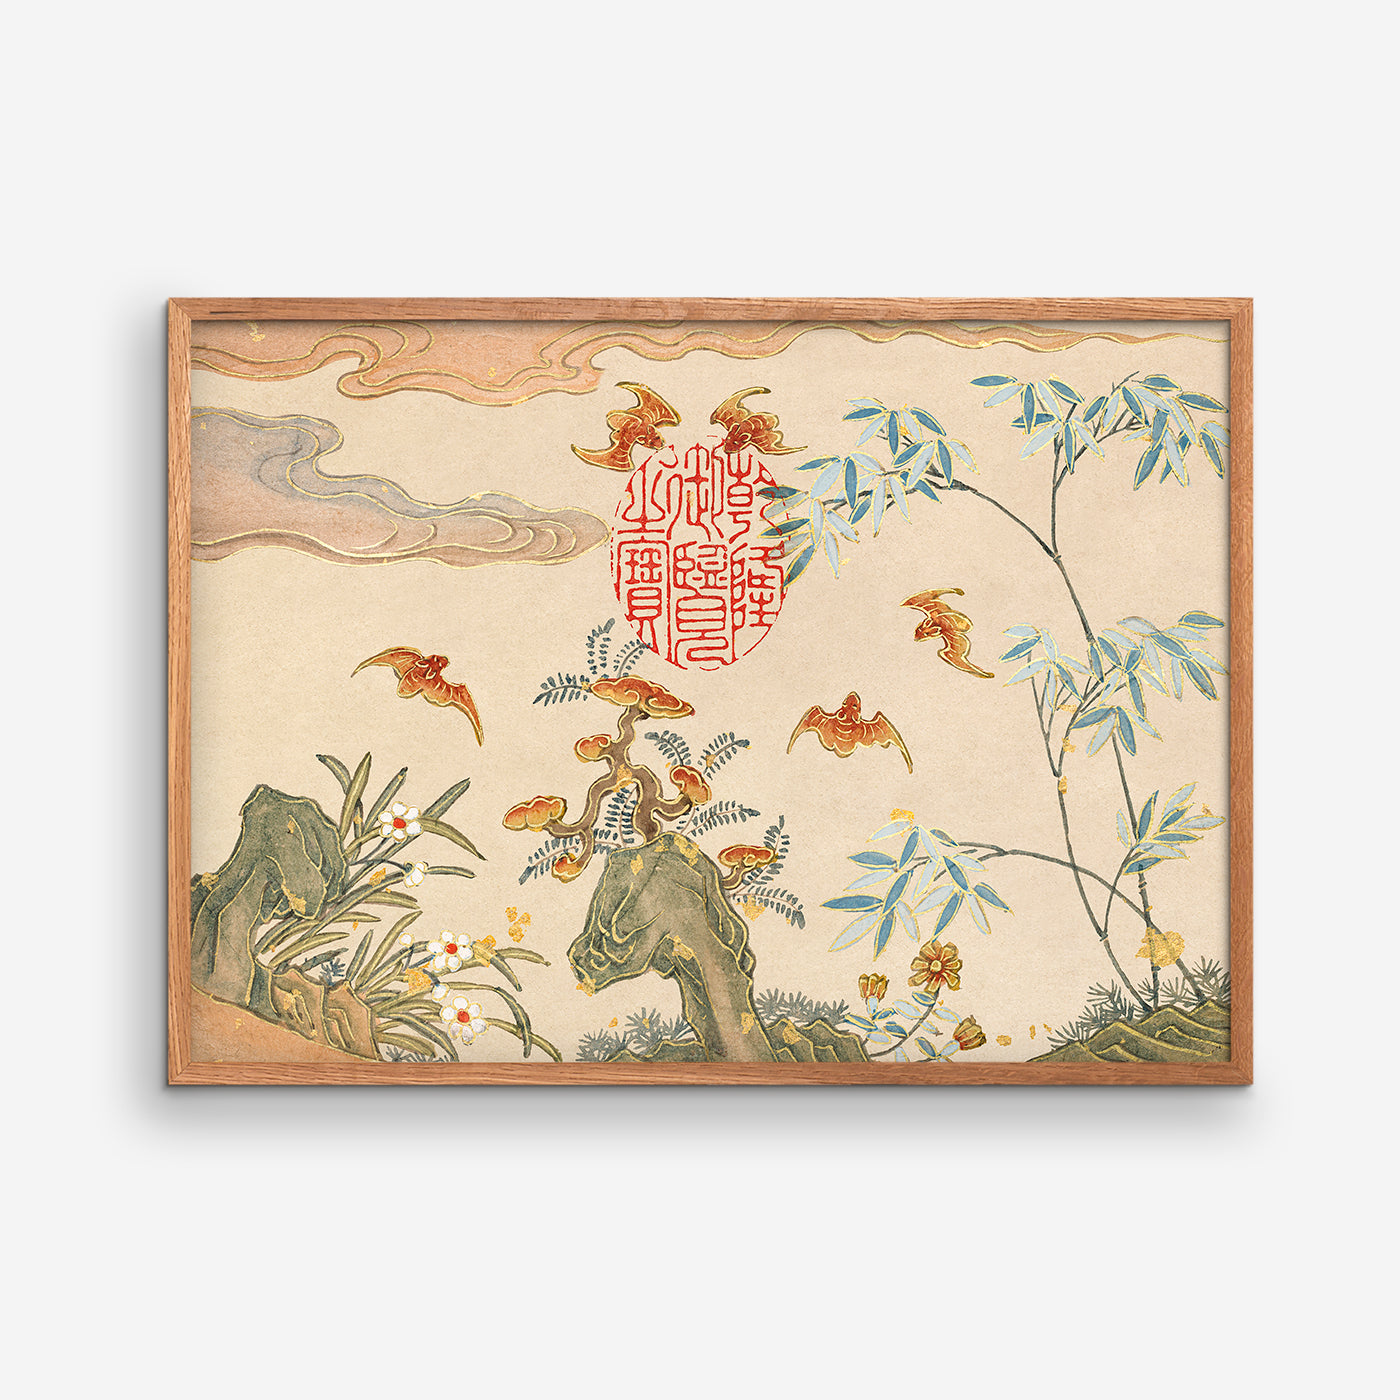 Bats, rocks, flowers - Zhang Ruoai